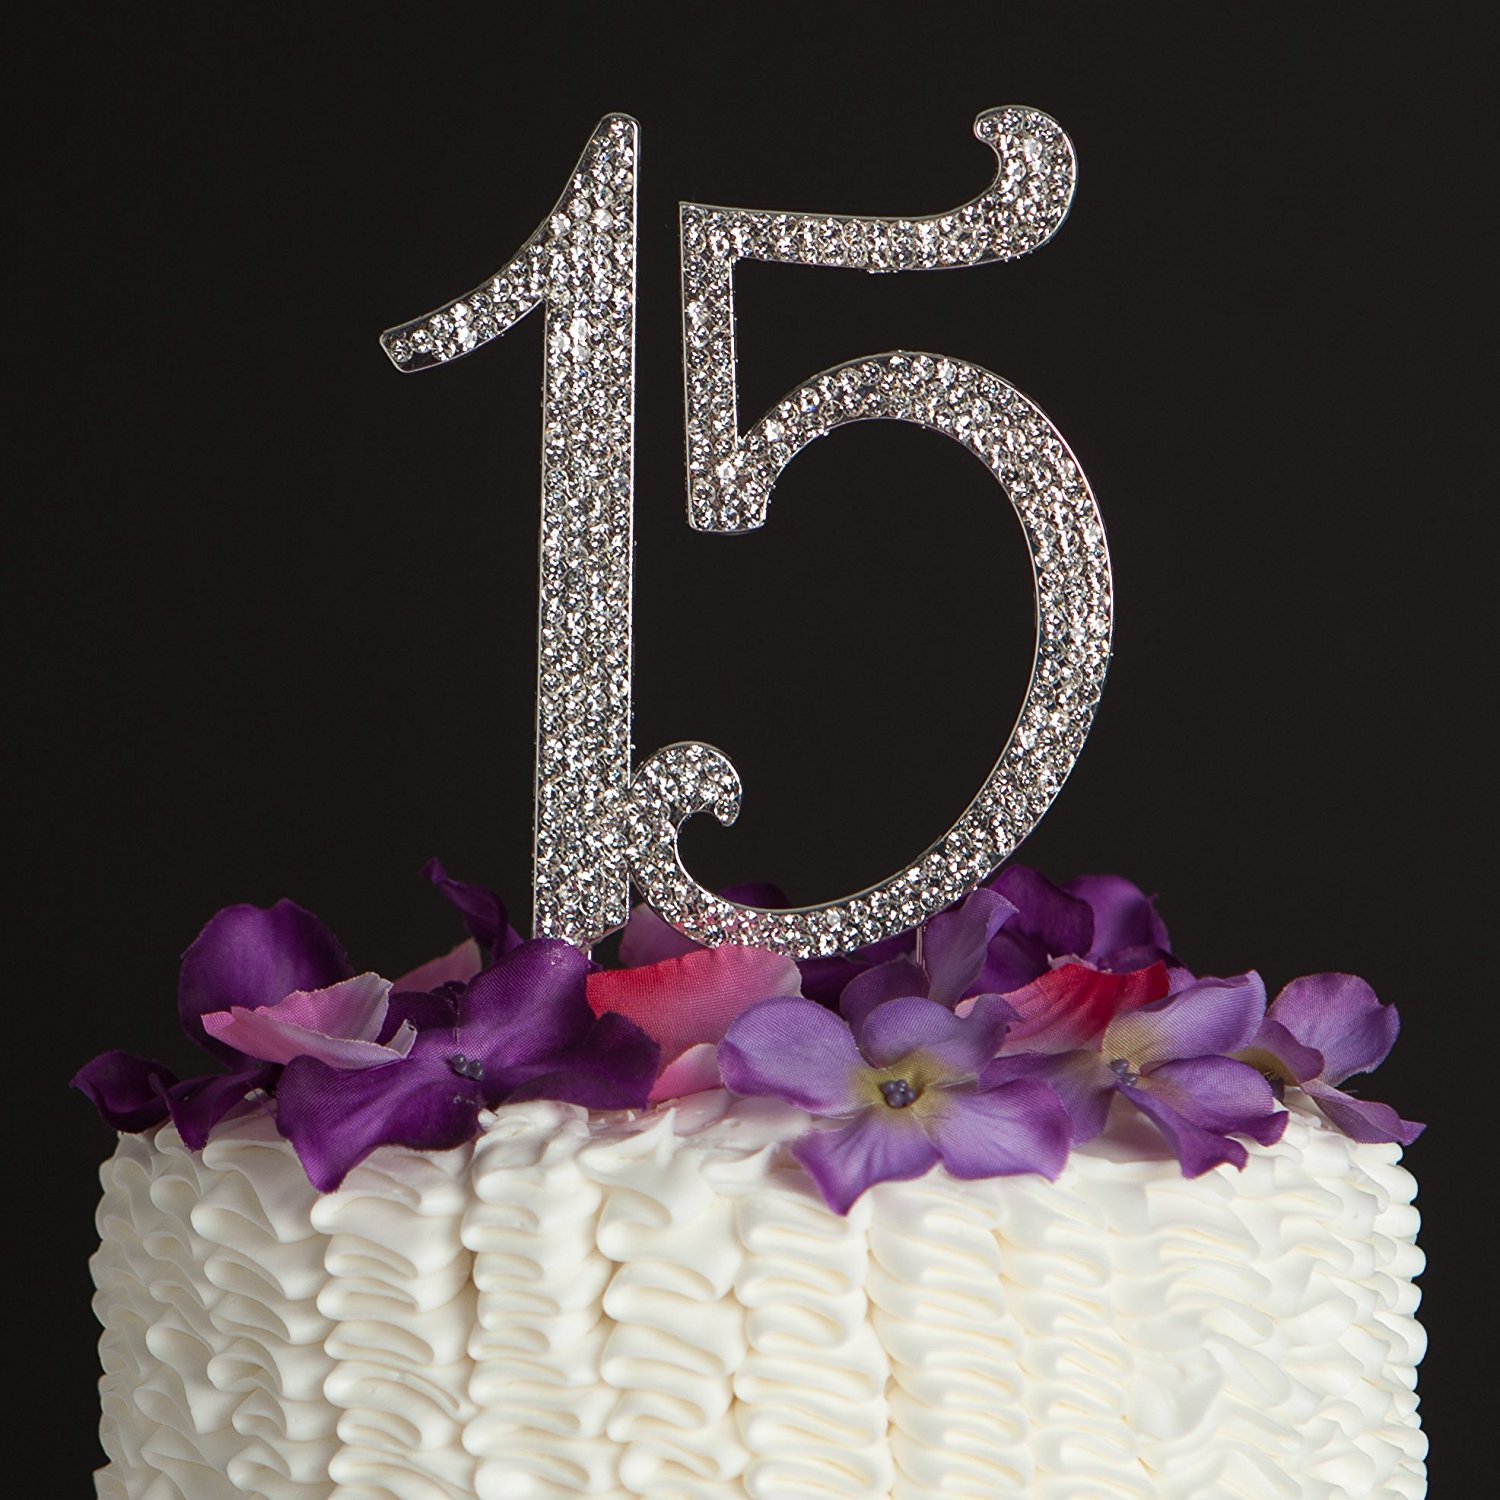 Поздравляем девочку 15 лет. Торт на день рождения 15 лет. Тортик цифры 15. С днём рождения 15 лет девушке. Торт для девочки 15 лет на день рождения.